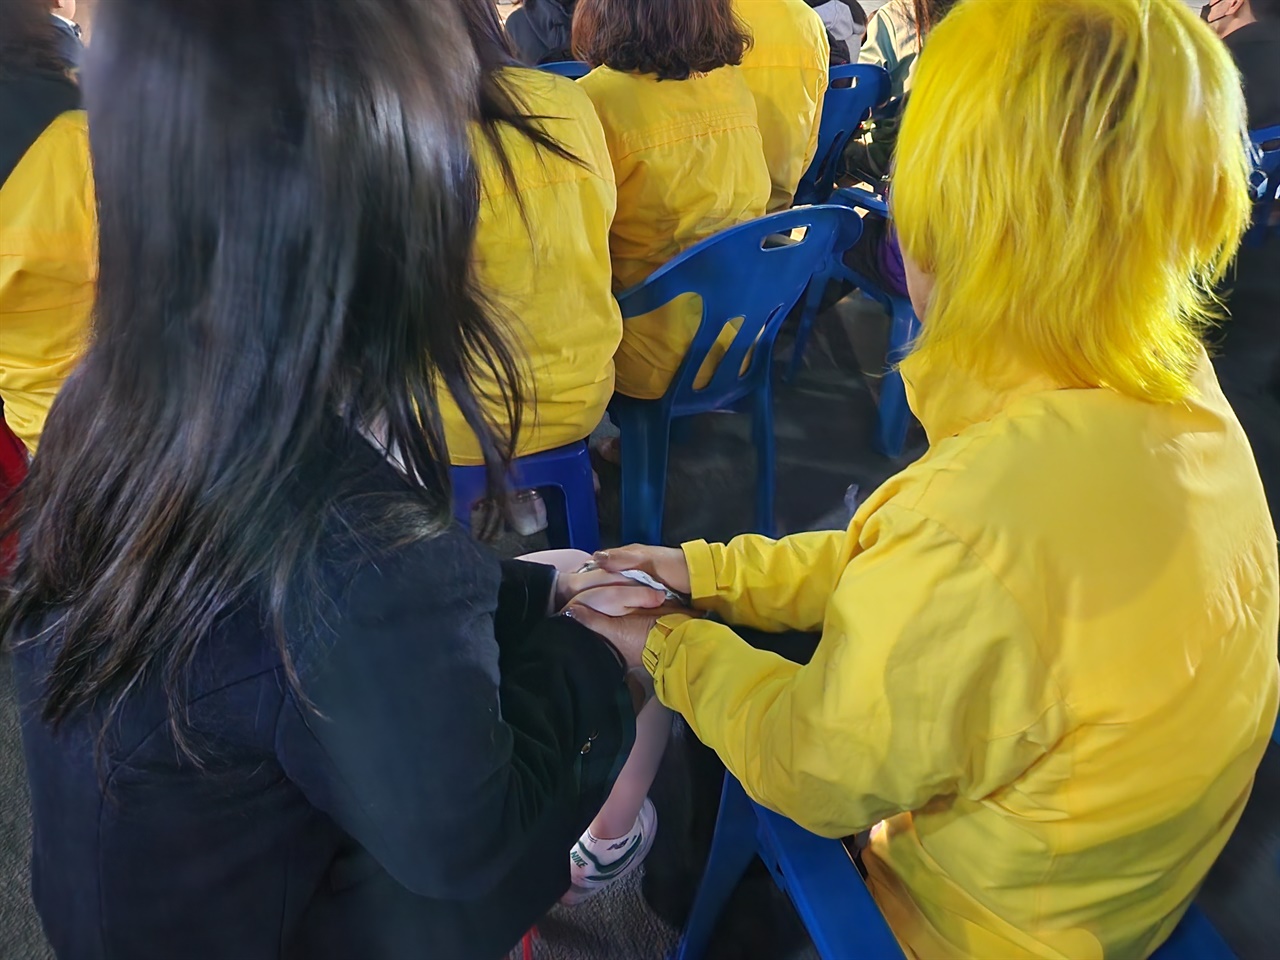 최지영씨가 핫팩을 쥔 손으로 최예은 학생의 손을 감싸고 있다. 